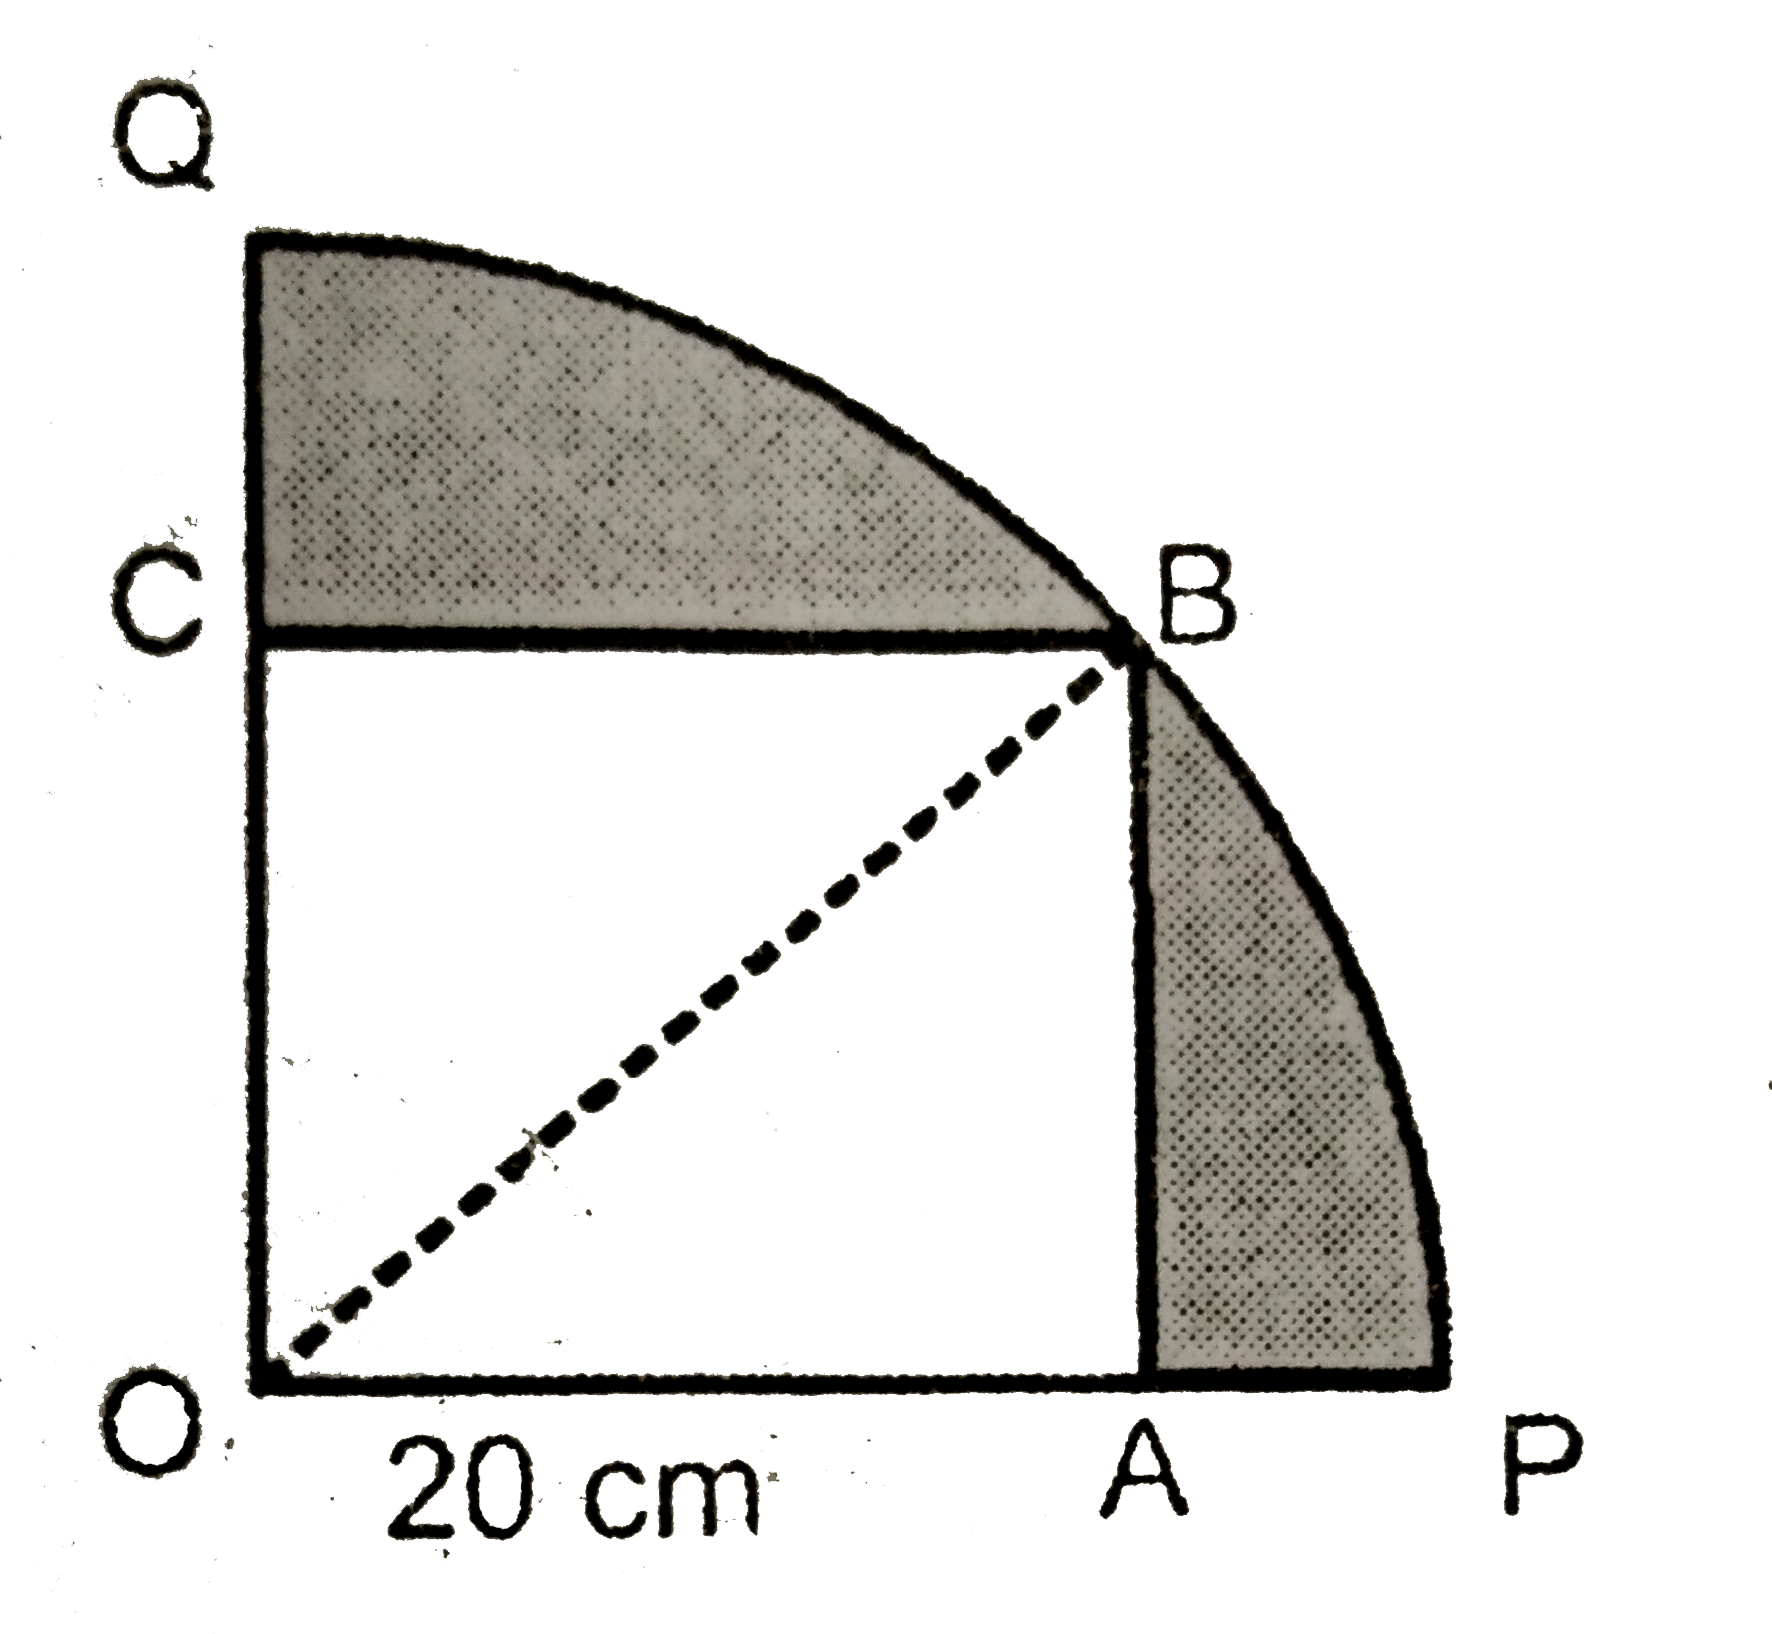 दिए गए चित्र में  चतुर्थांश OPBQ  में एक  वर्ग OABC  खींचा  गया है | यदि OA  = 20 cm तो  छायांकित  क्षेत्र  का क्षेत्रफल  ज्ञात  करे |